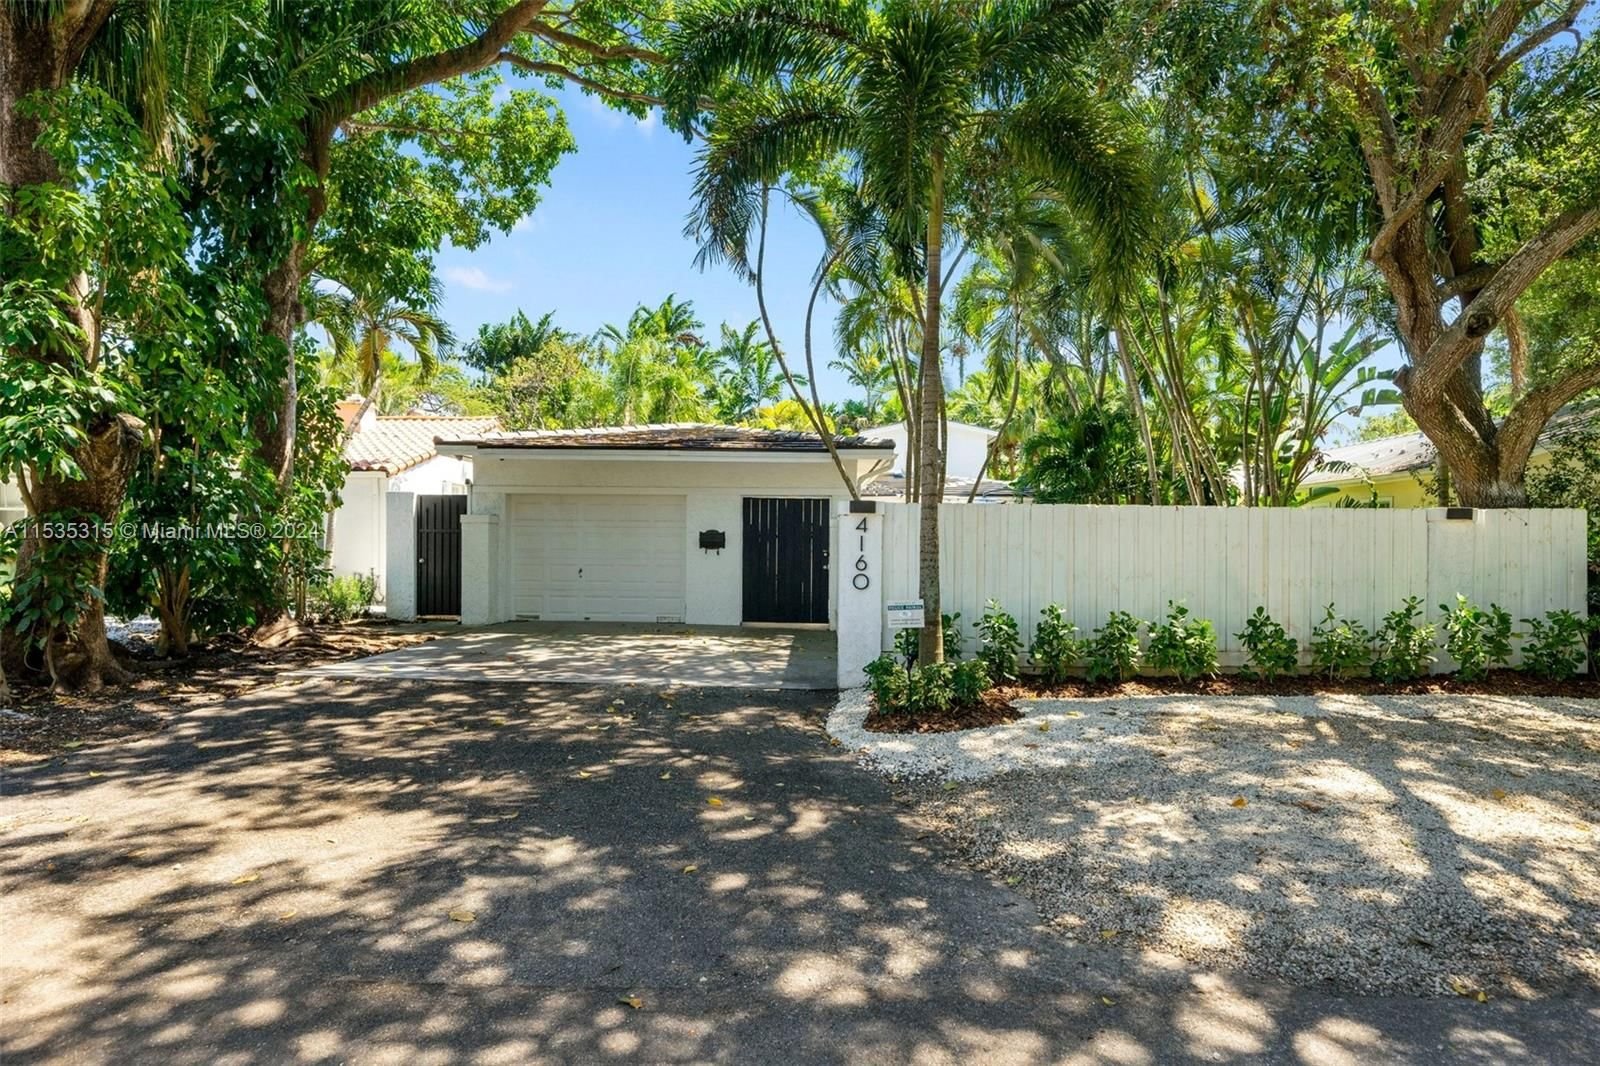 Real estate property located at 4160 Ventura Ave, Miami-Dade County, UTOPIA, Miami, FL